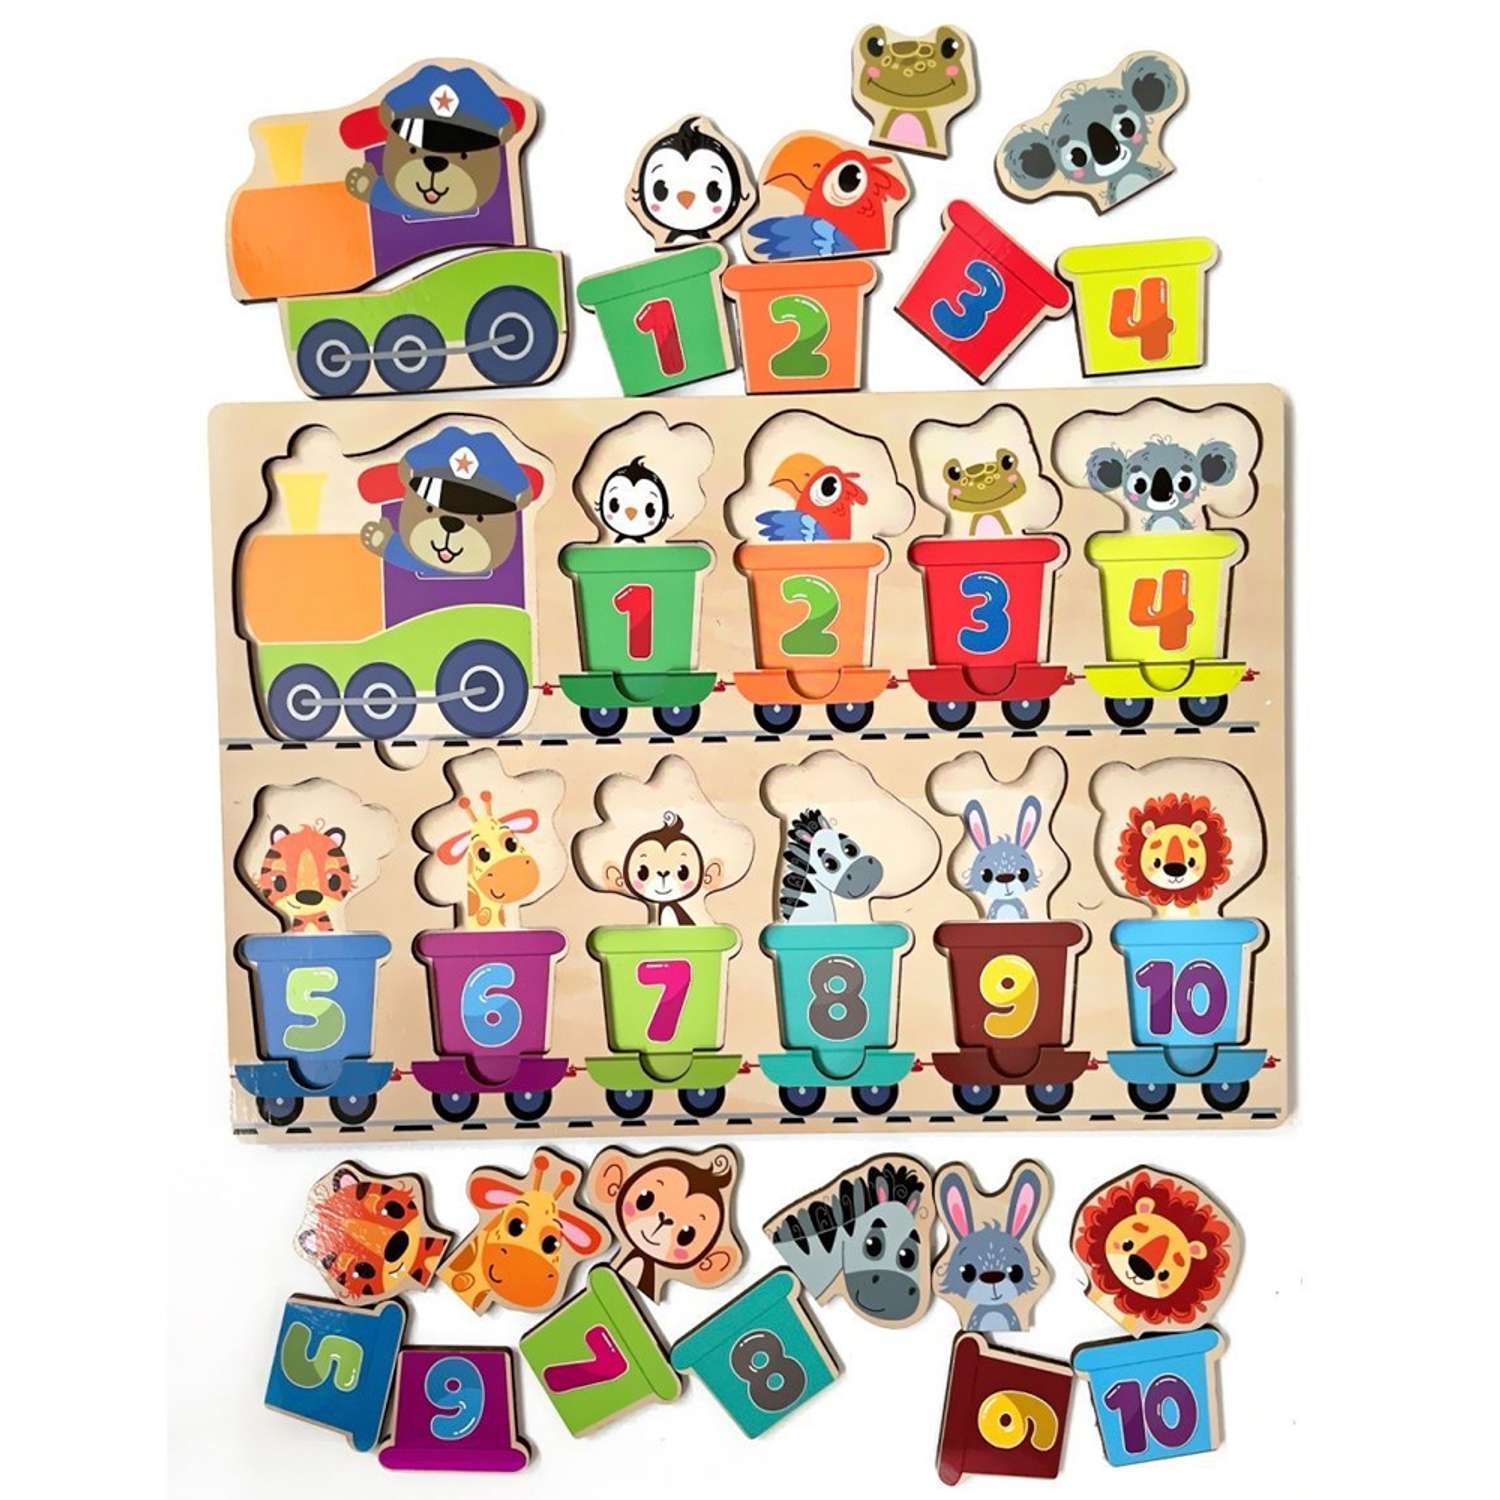 Игровой набор Parrot Carrot рамки вкладыши для малышей Паровозики: буквы и цифры 2 шт - фото 5